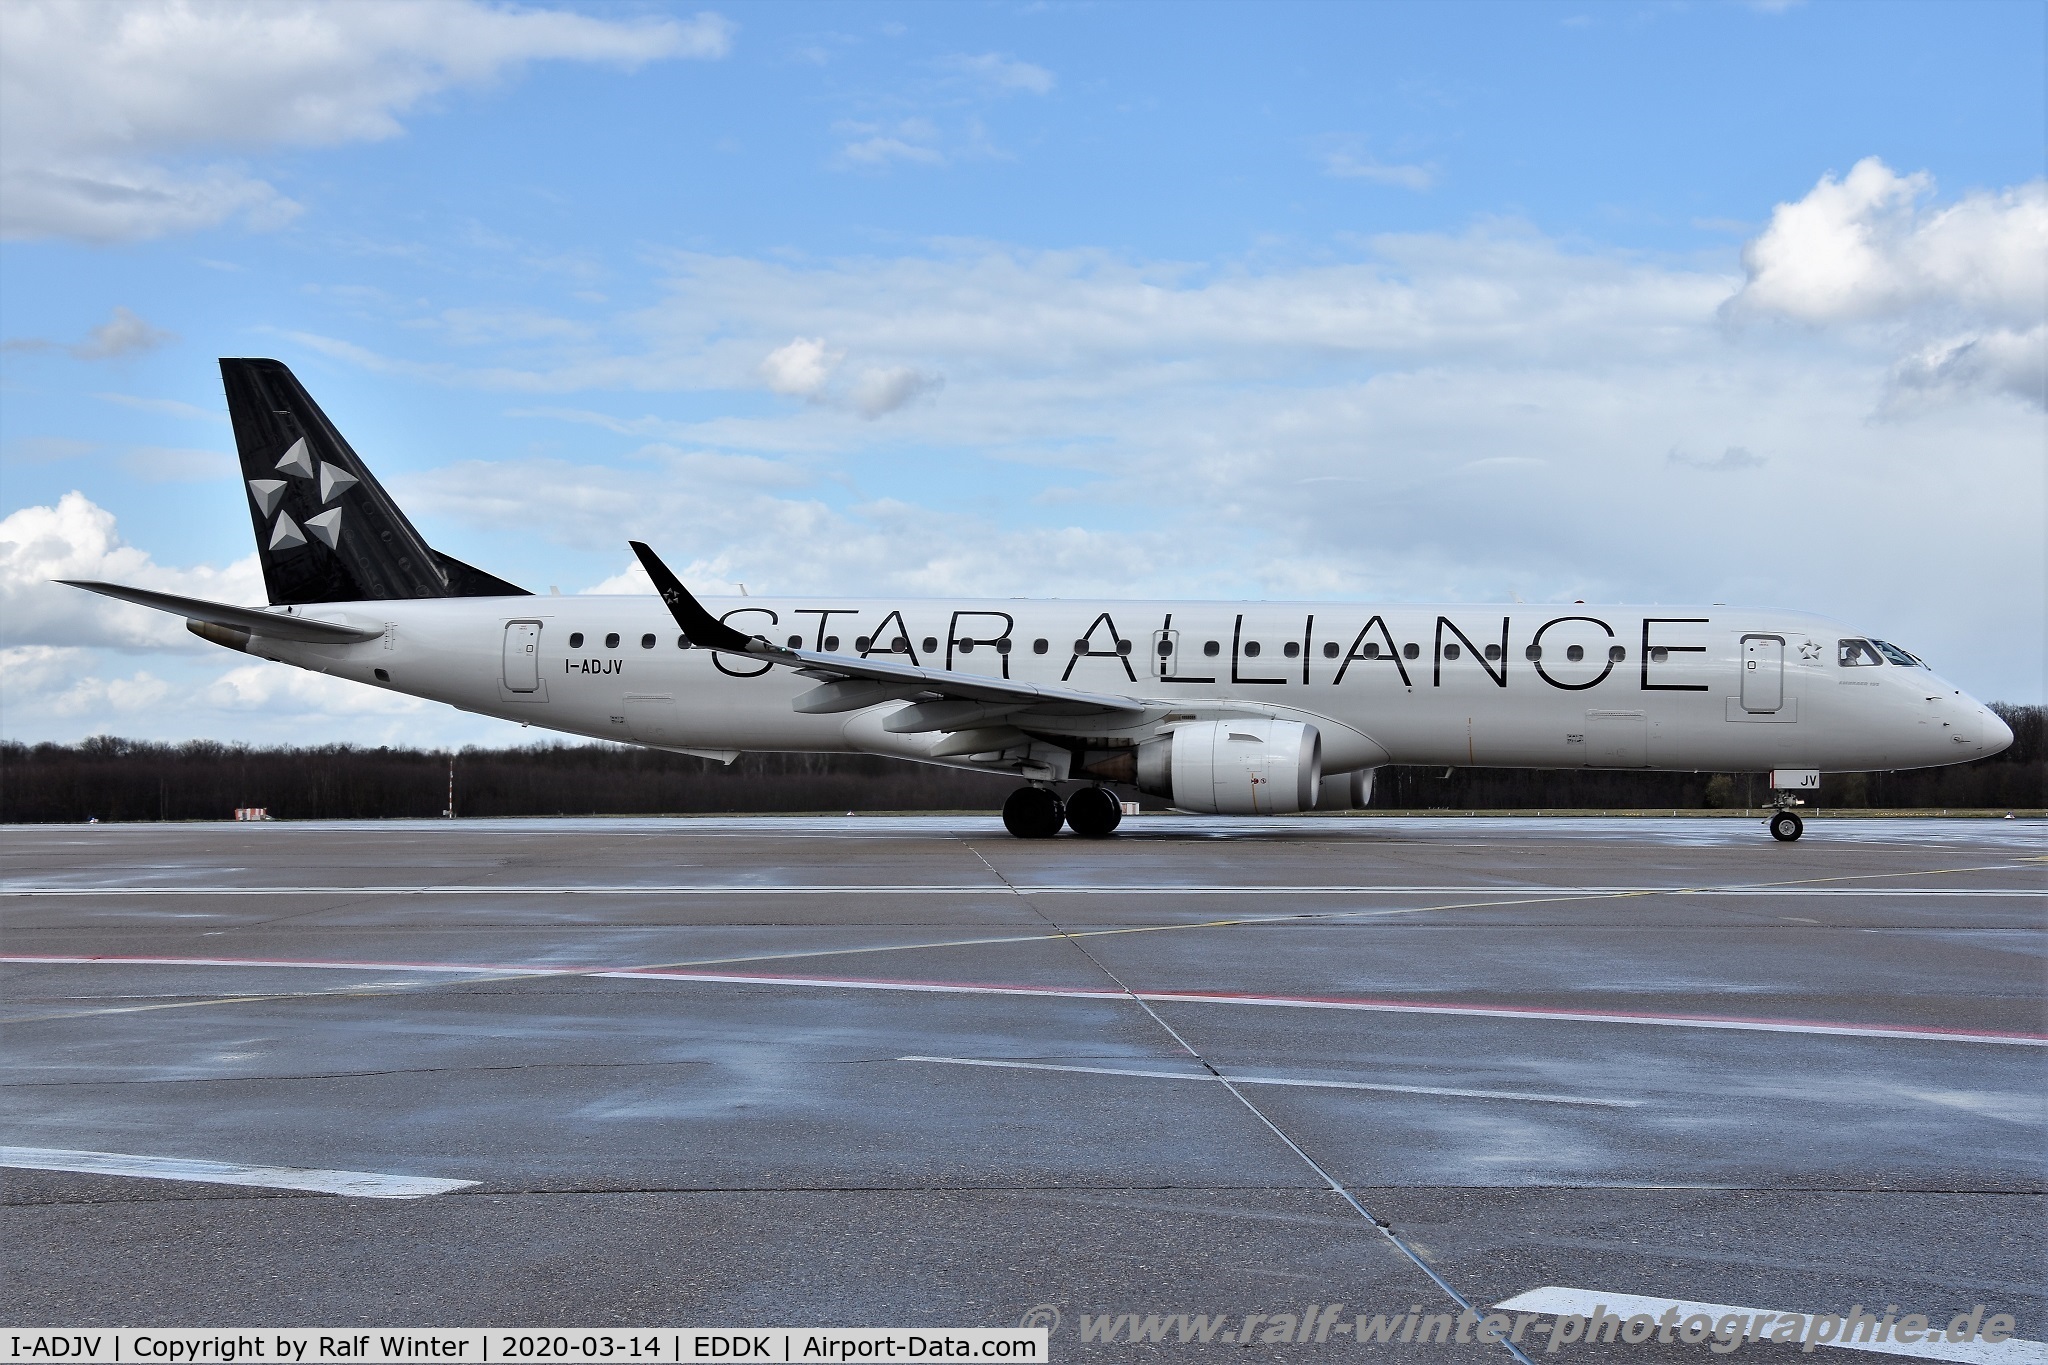 I-ADJV, 2009 Embraer 195LR (ERJ-190-200LR) C/N 19000308, Embraer ERJ-195LR 190-200LR - EN DLA Air Dolomiti 'Star Alliance' - 19000308 - I-ADJV - 14.03.2020 - CGN